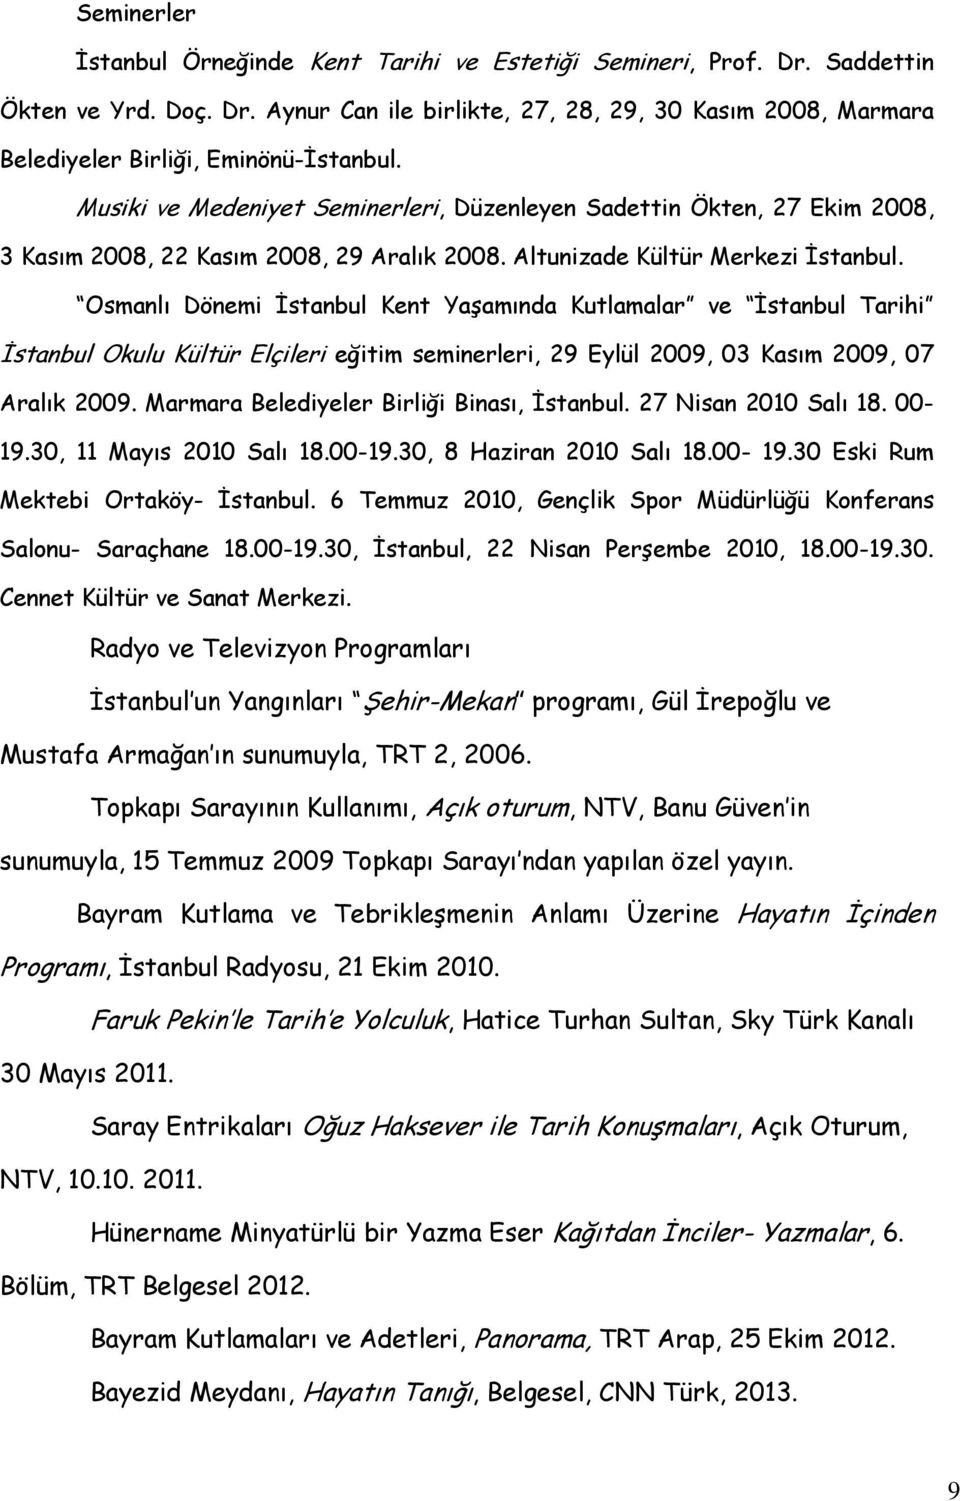 Osmanlı Dönemi İstanbul Kent Yaşamında Kutlamalar ve İstanbul Tarihi İstanbul Okulu Kültür Elçileri eğitim seminerleri, 29 Eylül 2009, 03 Kasım 2009, 07 Aralık 2009.